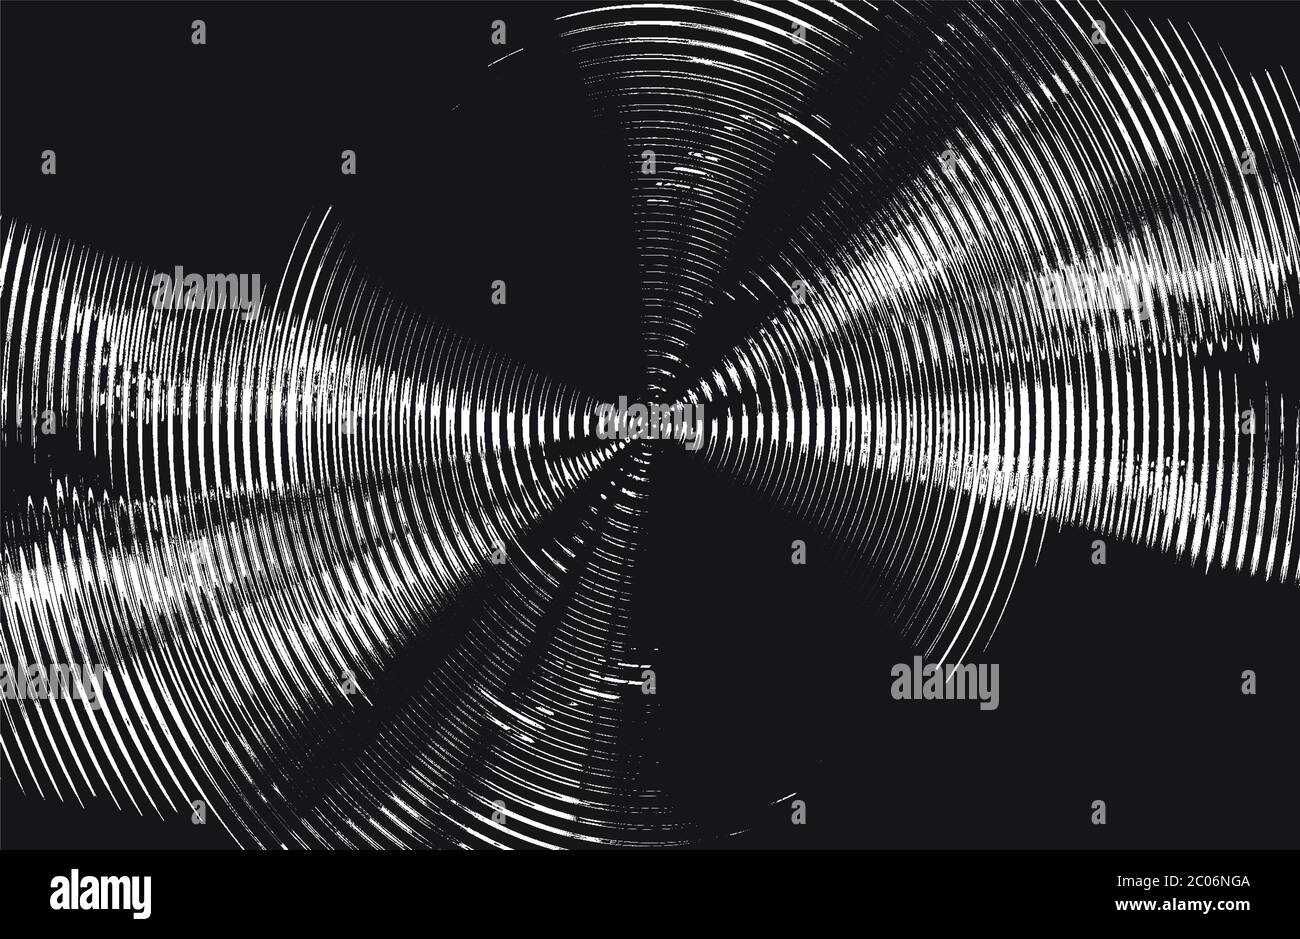 Abstrakter Vektor Silber Grunge Hintergrund mit Kreisen, Spirale, Gradienten und Fraktal. Abbildung EPS8 Stock Vektor